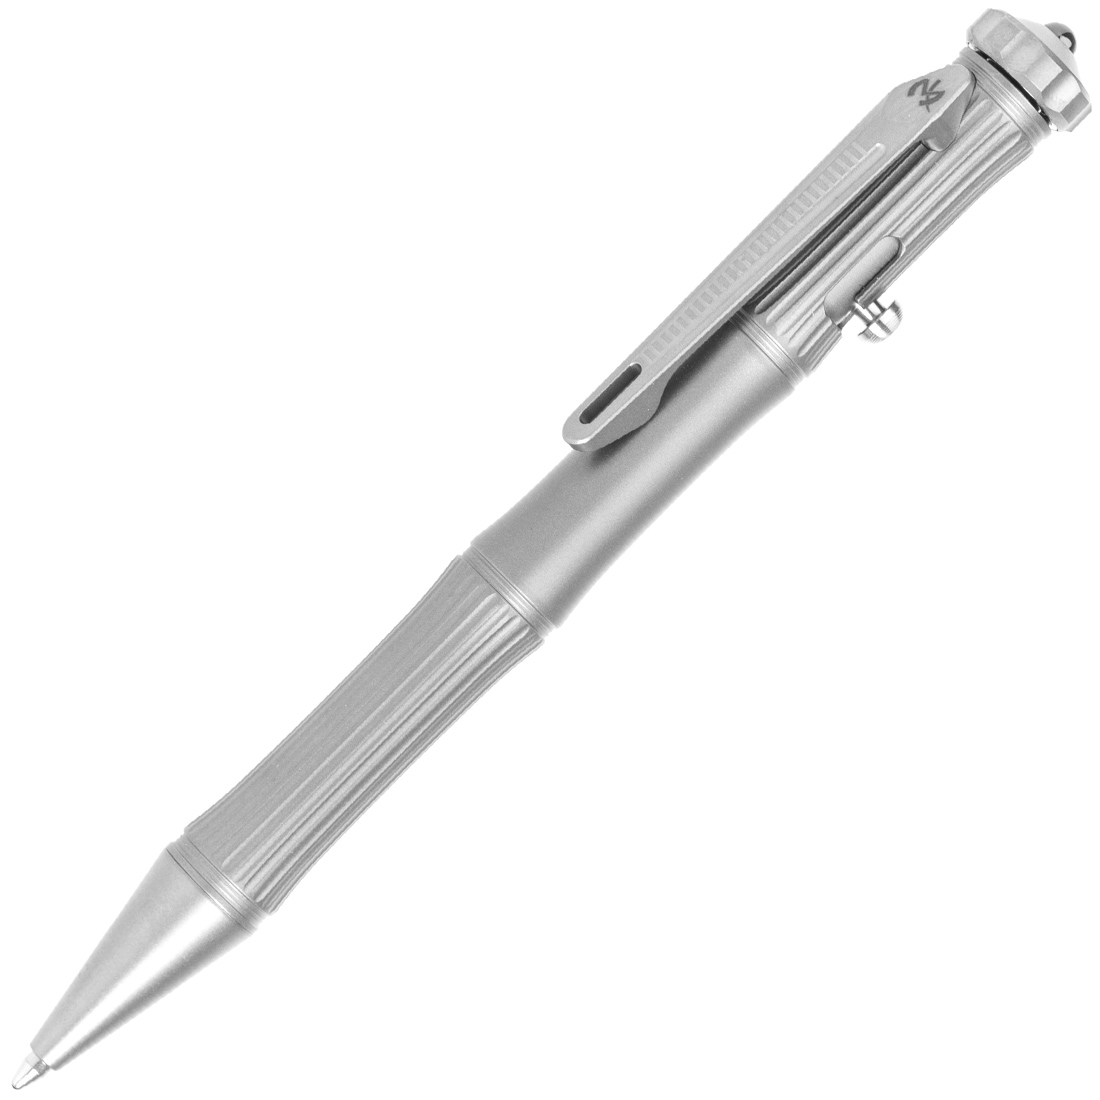 Stylo tactique Stealth Pen Pro pour autodéfense – Stylo de survie